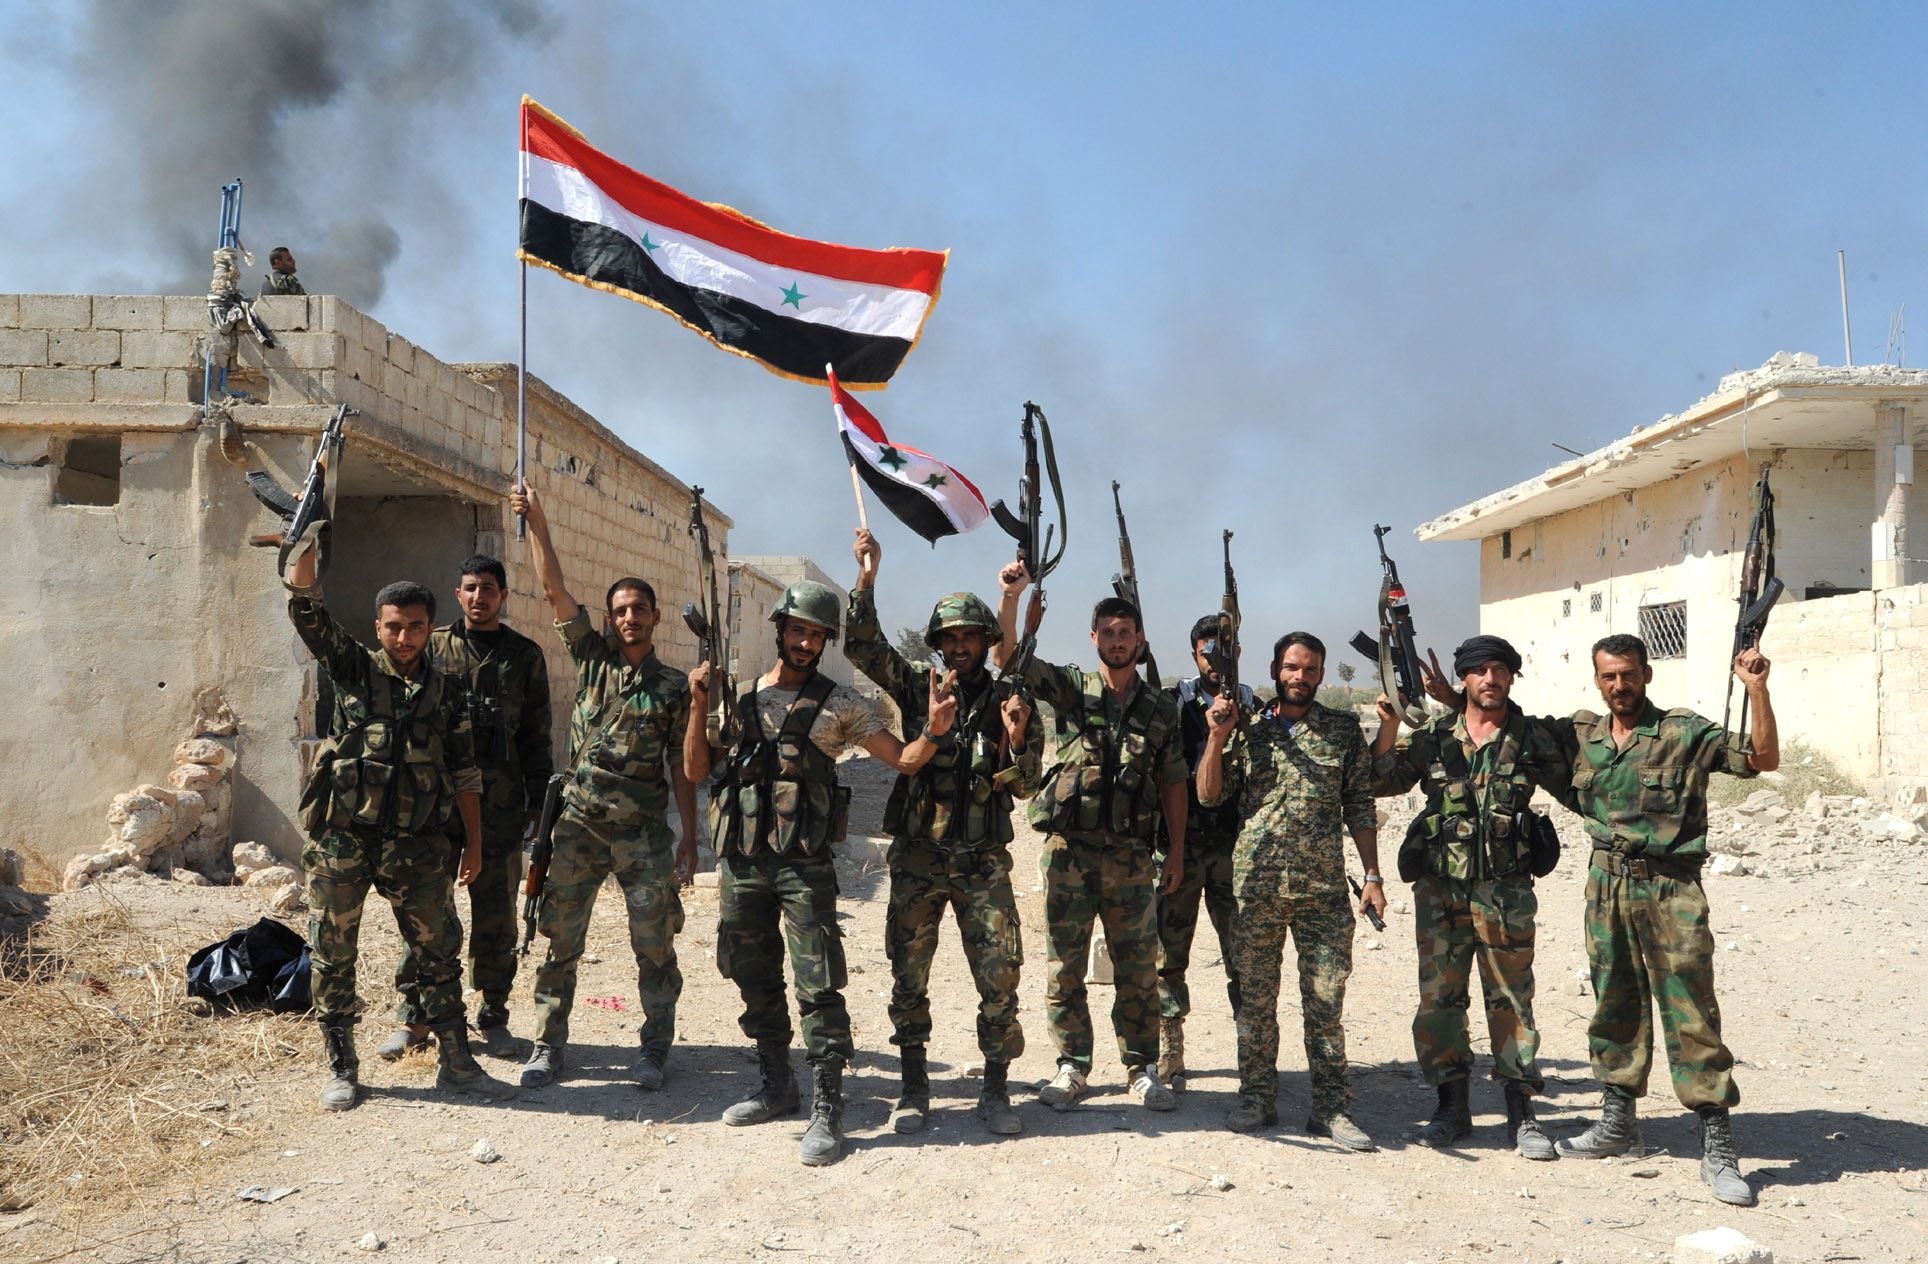 Μονάδες του συριακού και του ιρακινού Στρατού συναντήθηκαν στα σύνορα των δύο χωρών